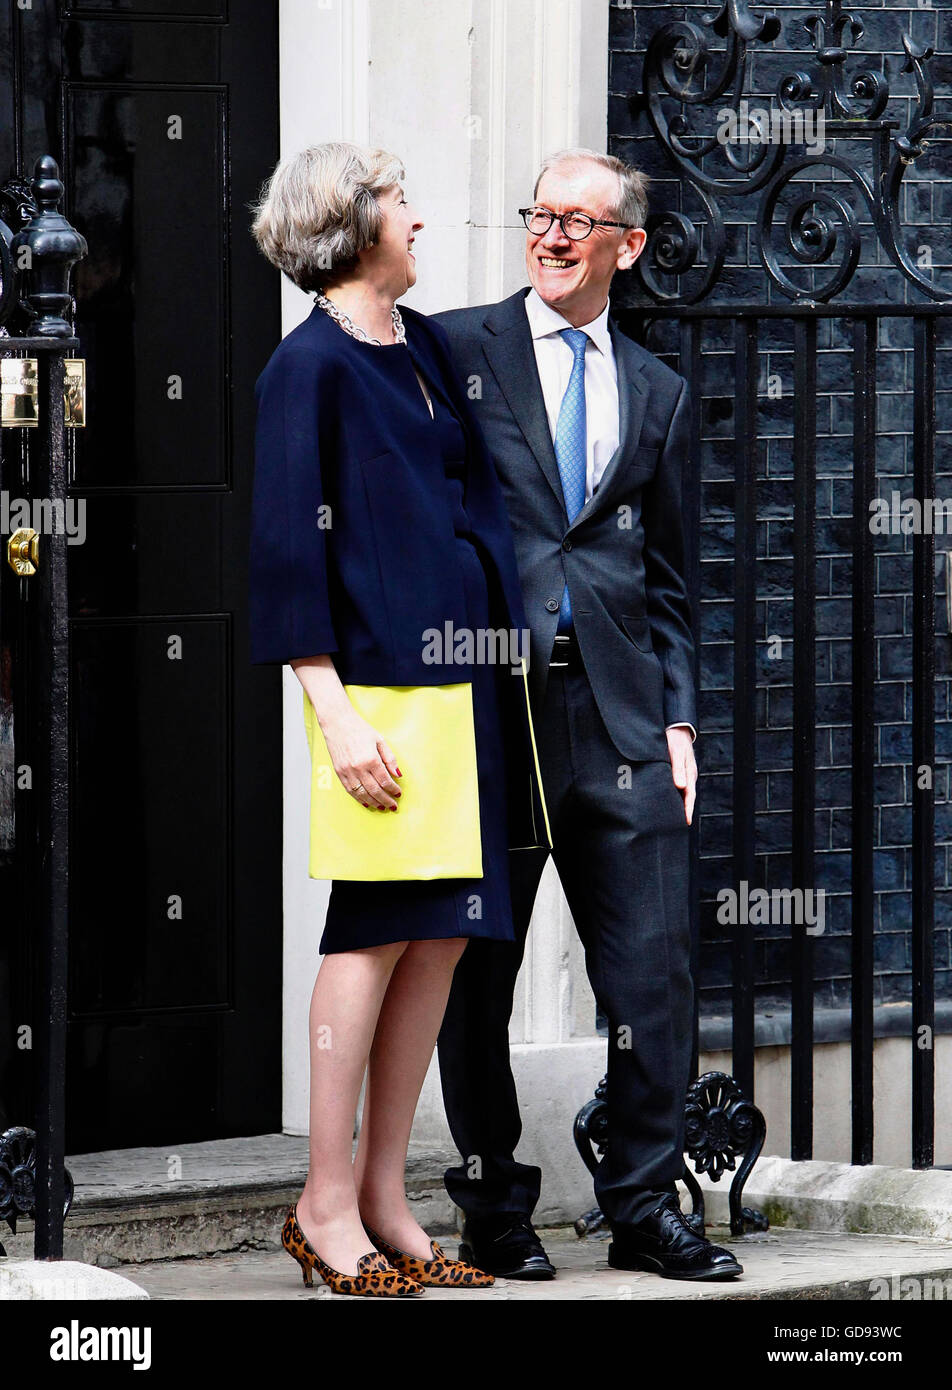 Londres, Royaume-Uni. Le 13 juillet, 2016. Theresa May avec mari Philip mai sur les étapes du numéro 10 Downing Street sur son premier jour en tant que premier ministre. Credit : yeux omniprésents/Alamy Live News Banque D'Images